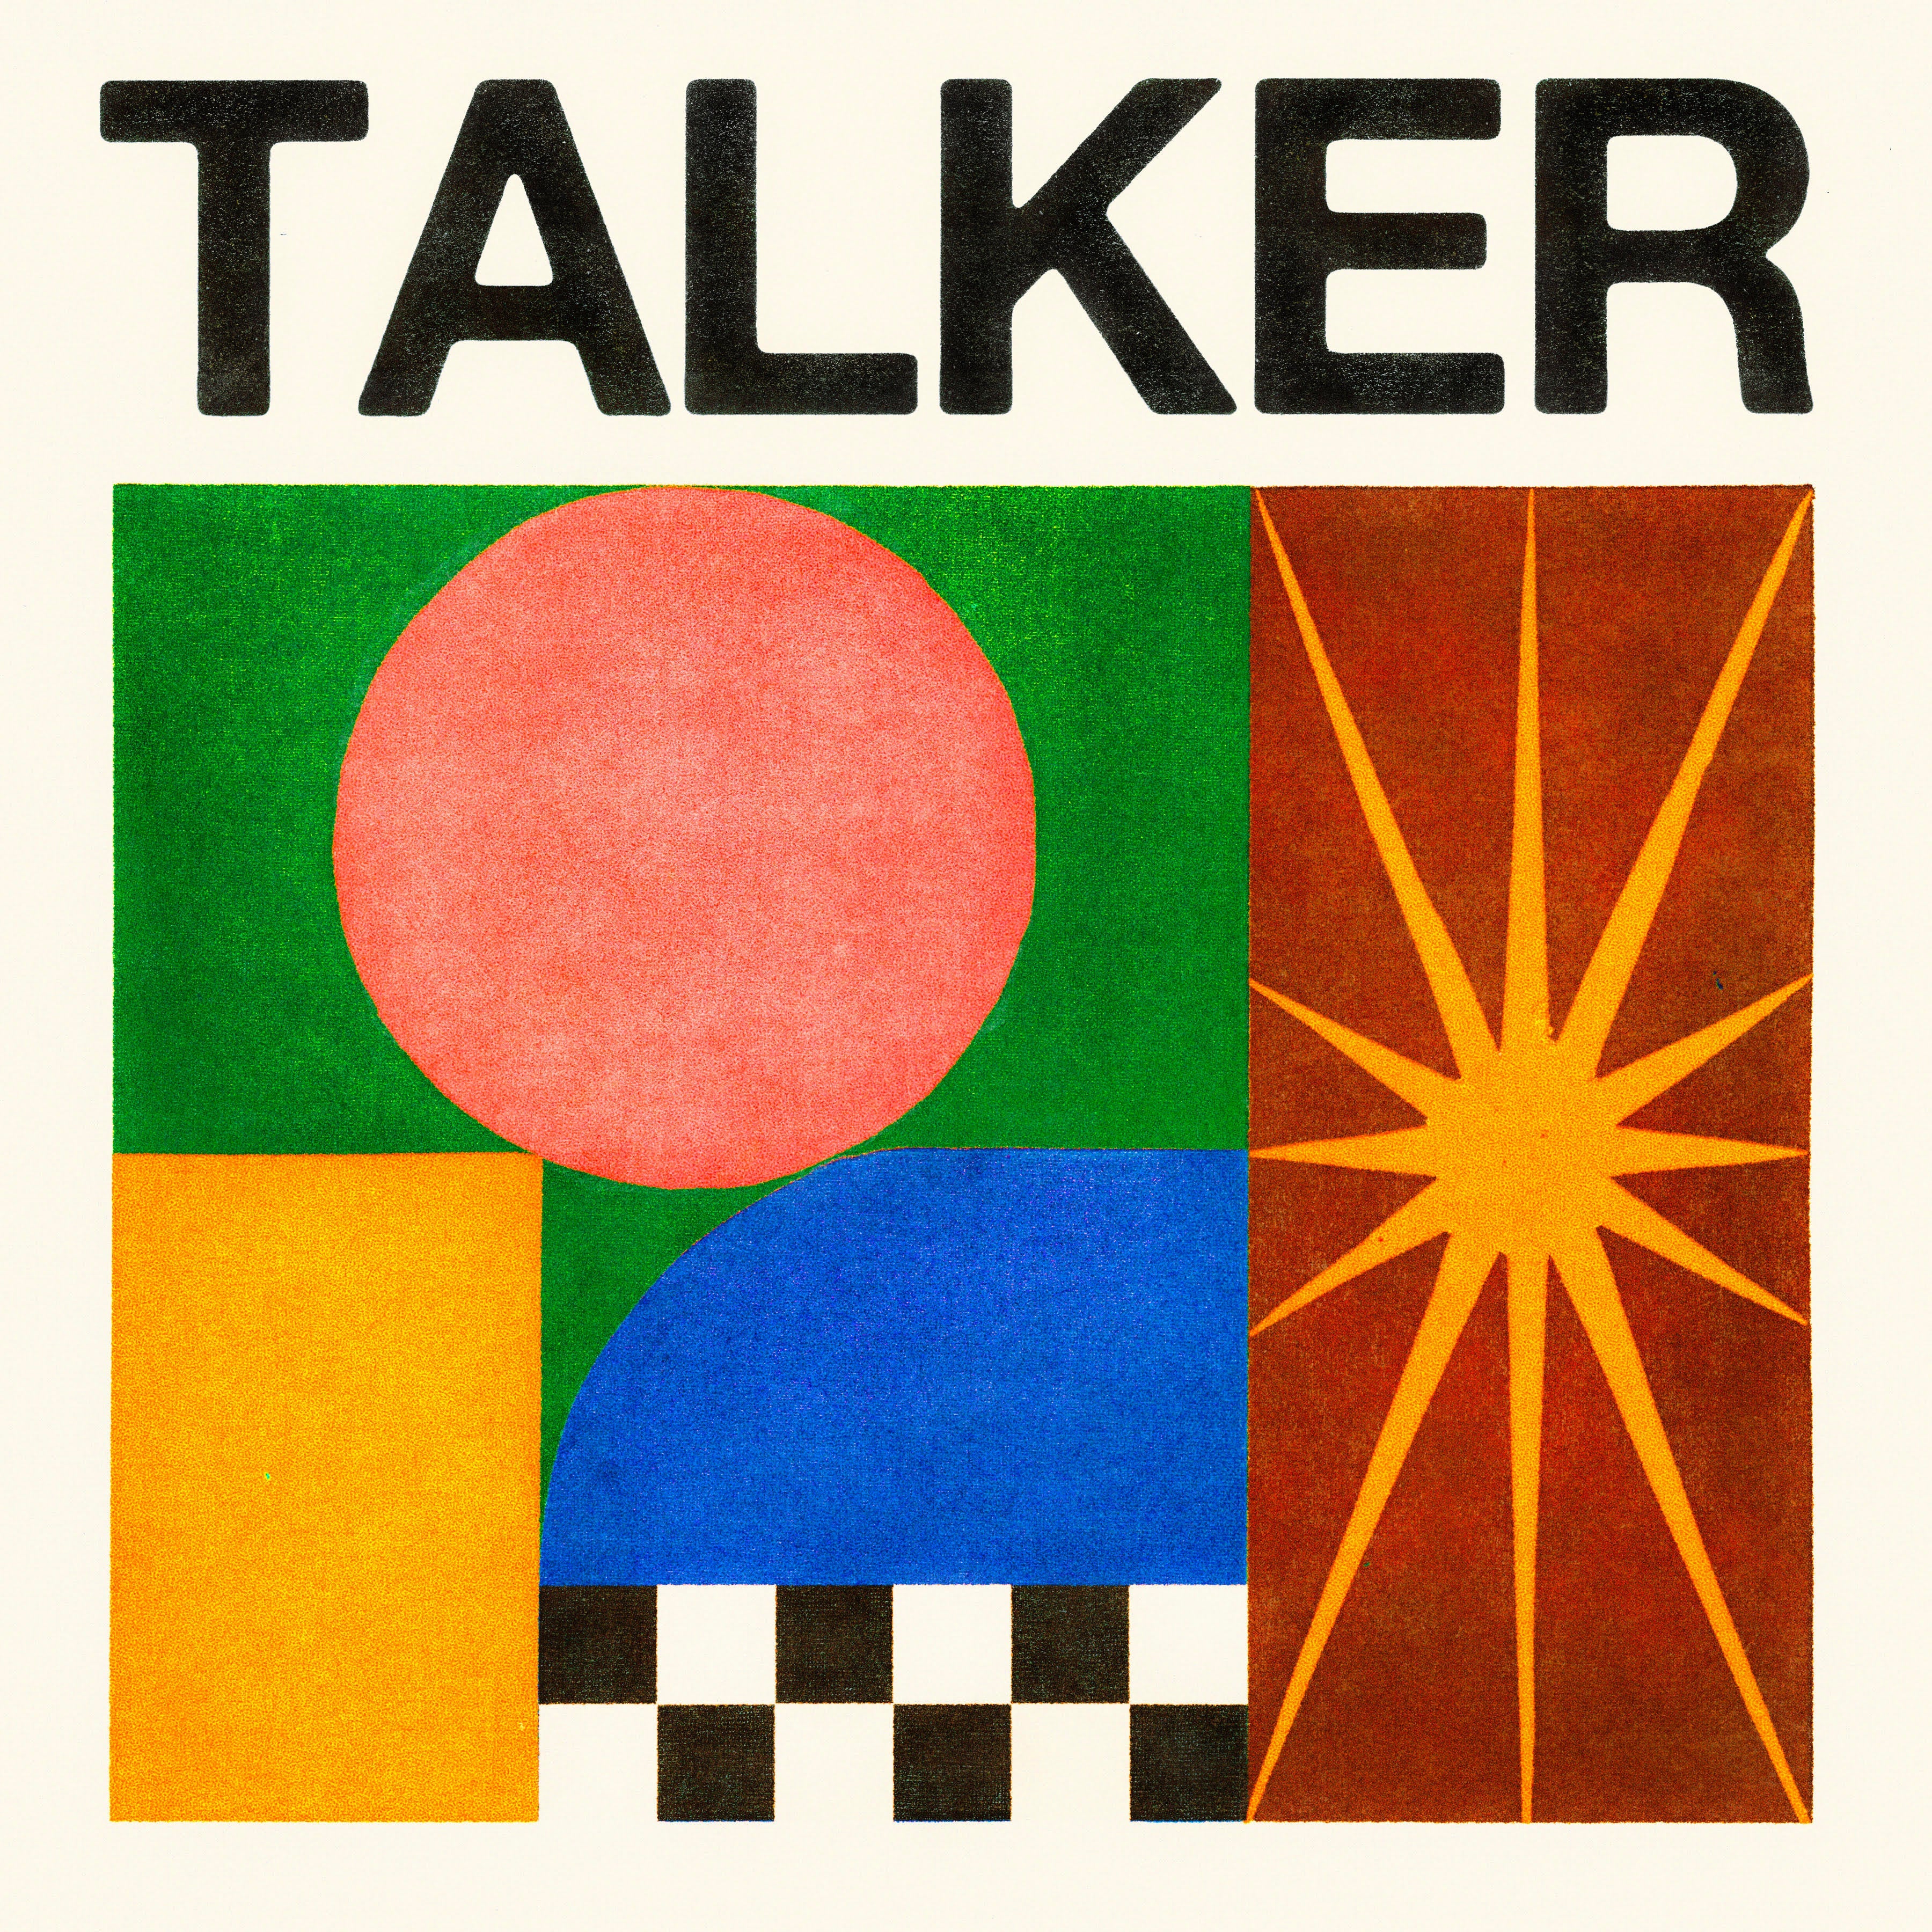 Talker Standard Black Vinyl